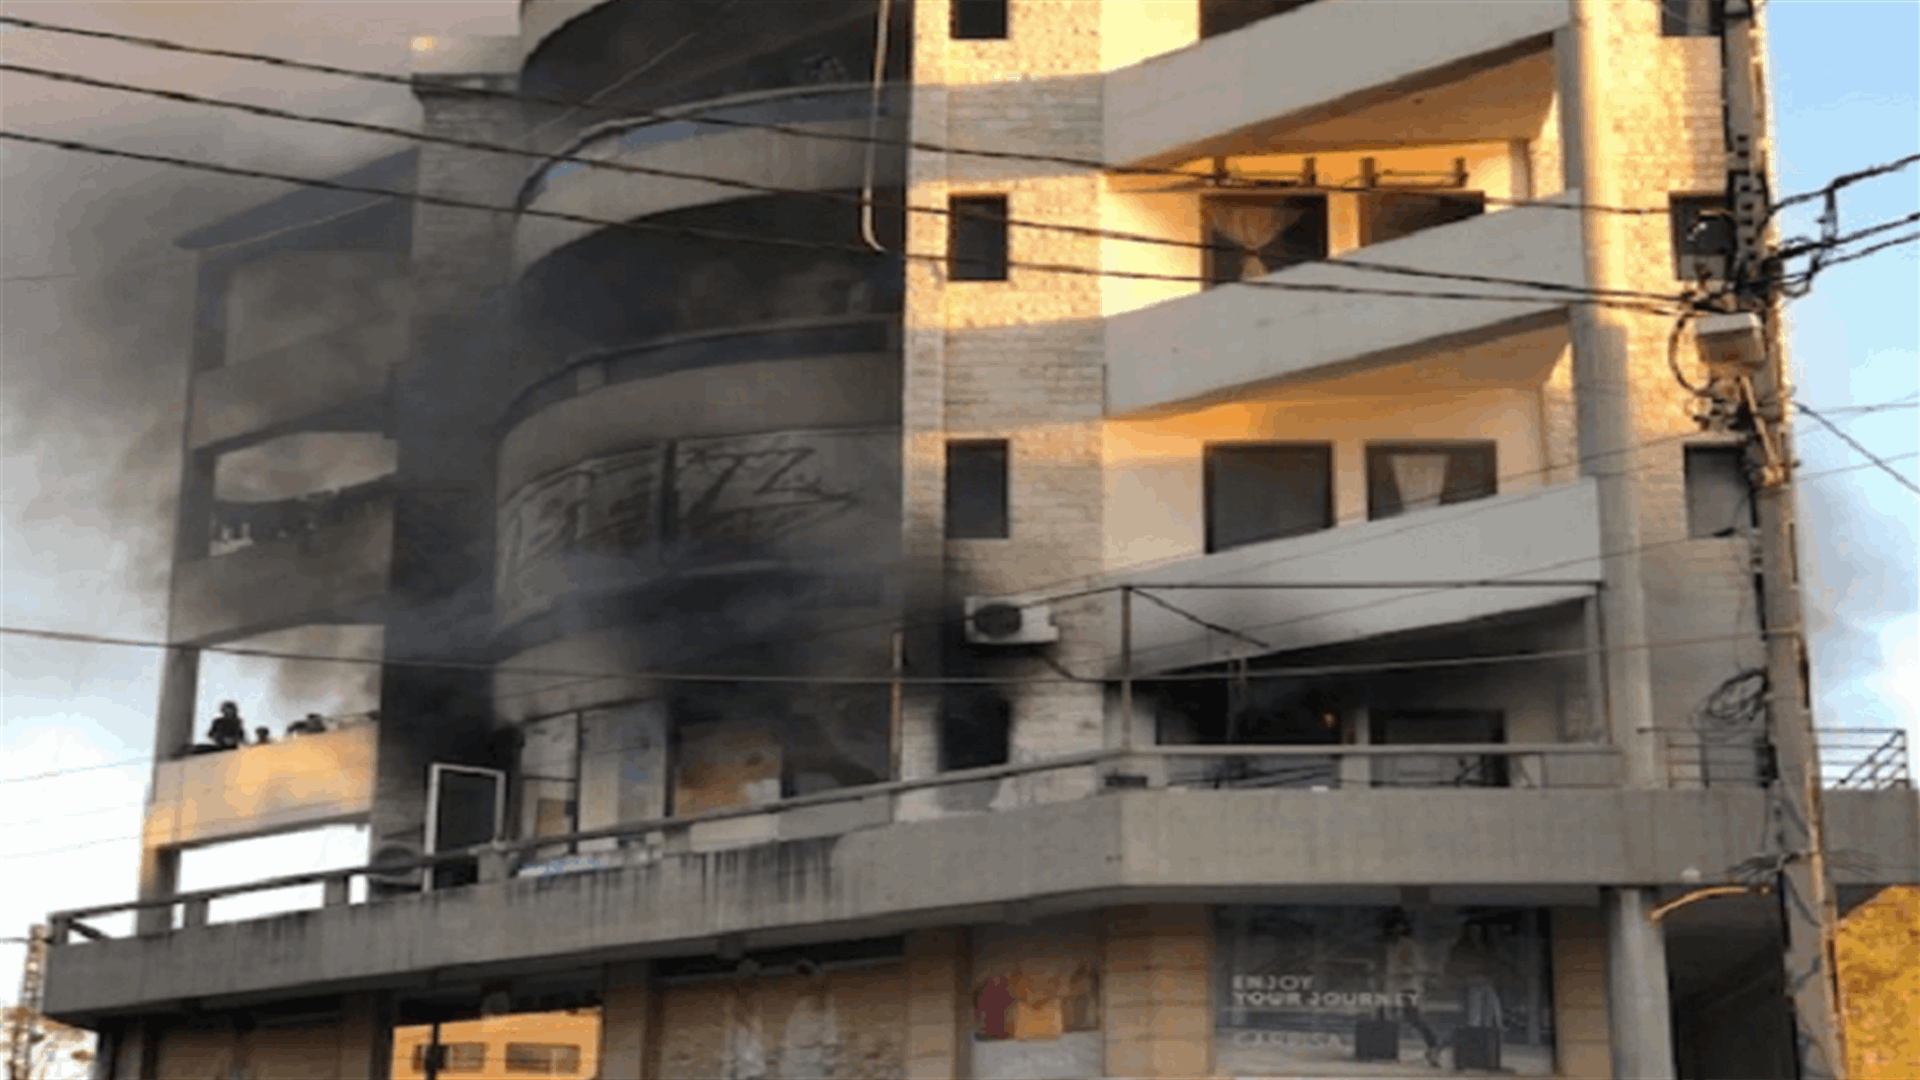 اصابة طفلة جراء حريق داخل شقة سكنية في جبيل